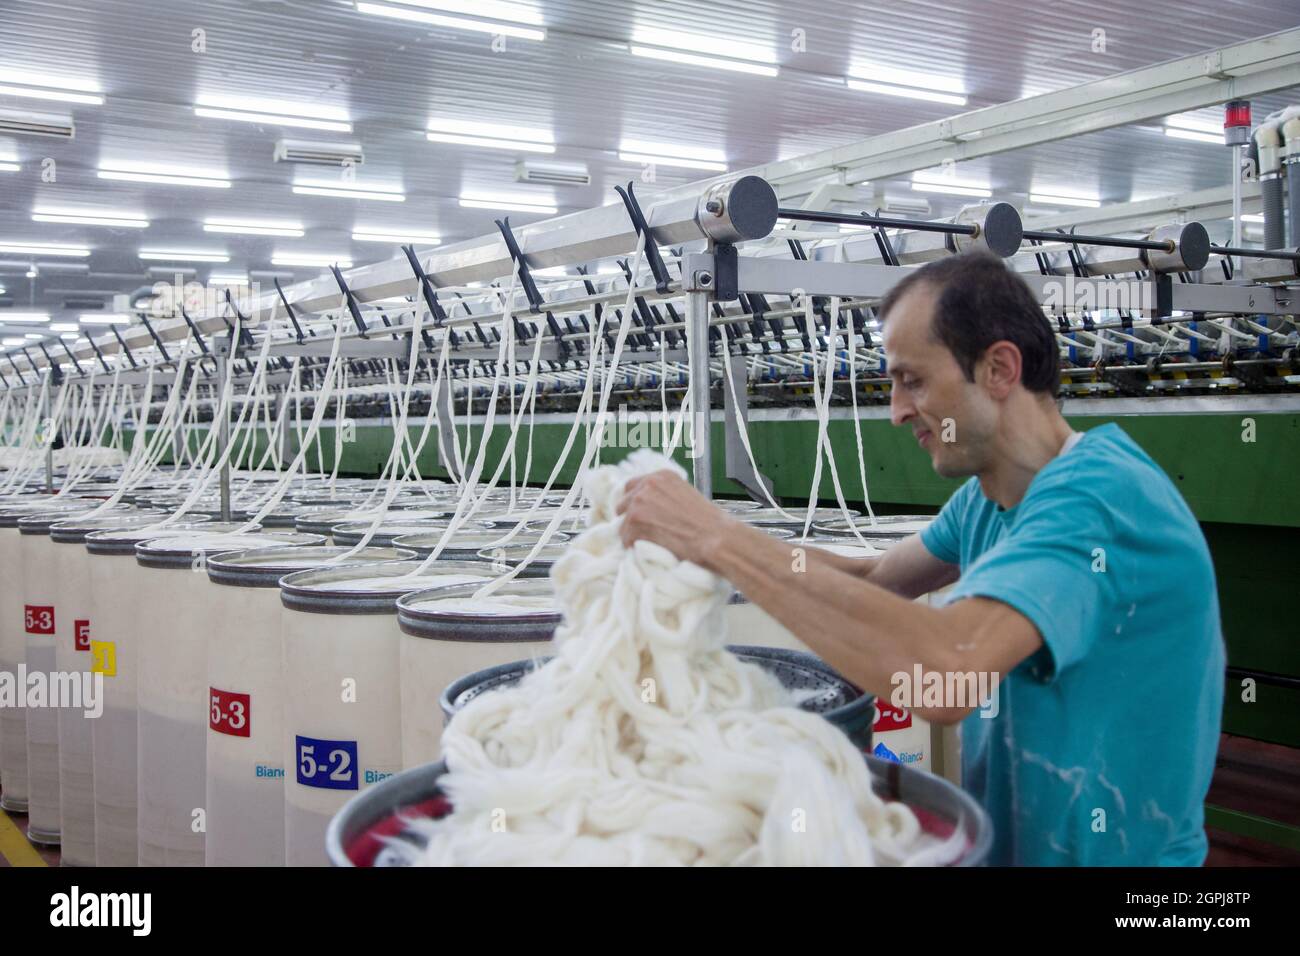 Istanbul / Turchia - 08/26/2014: Un lavoratore sconosciuto che lavora in una fabbrica tessile. Foto Stock